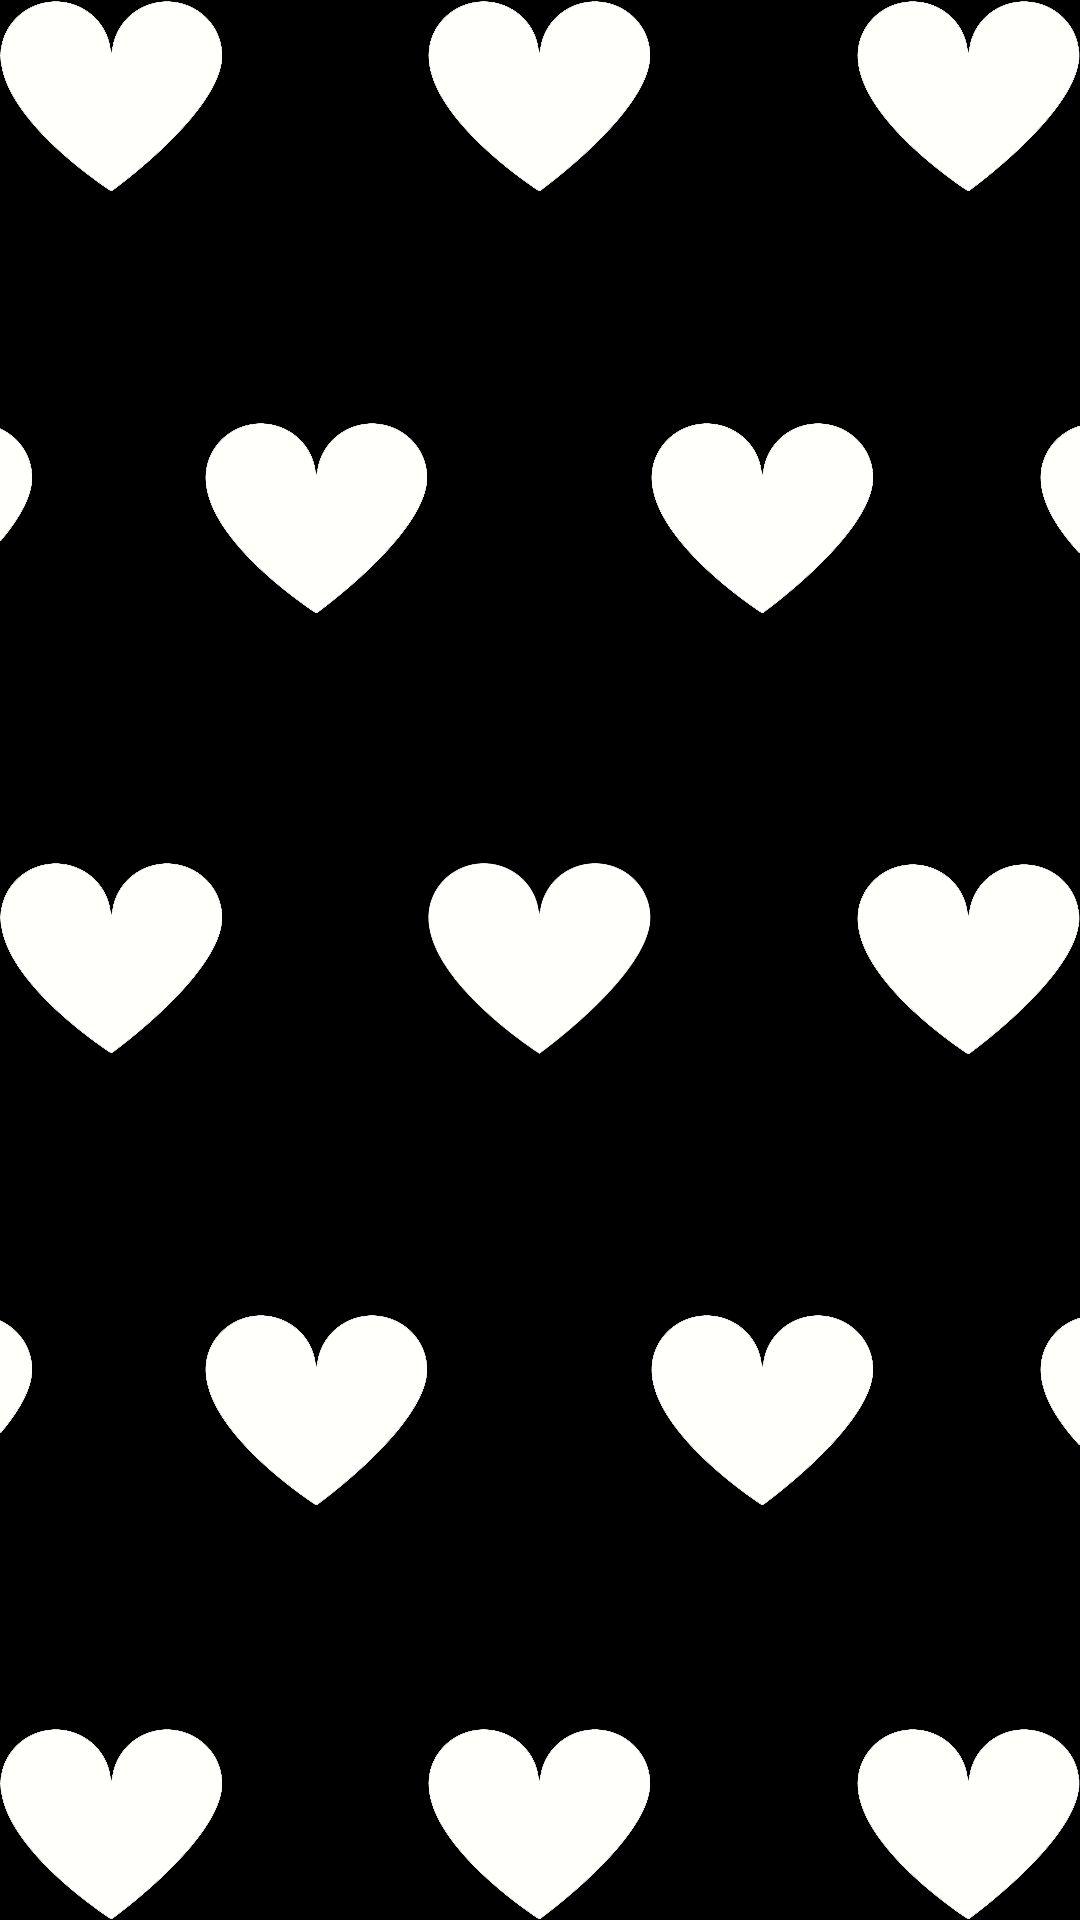 Hearts. Heart wallpaper, Heart iphone wallpaper